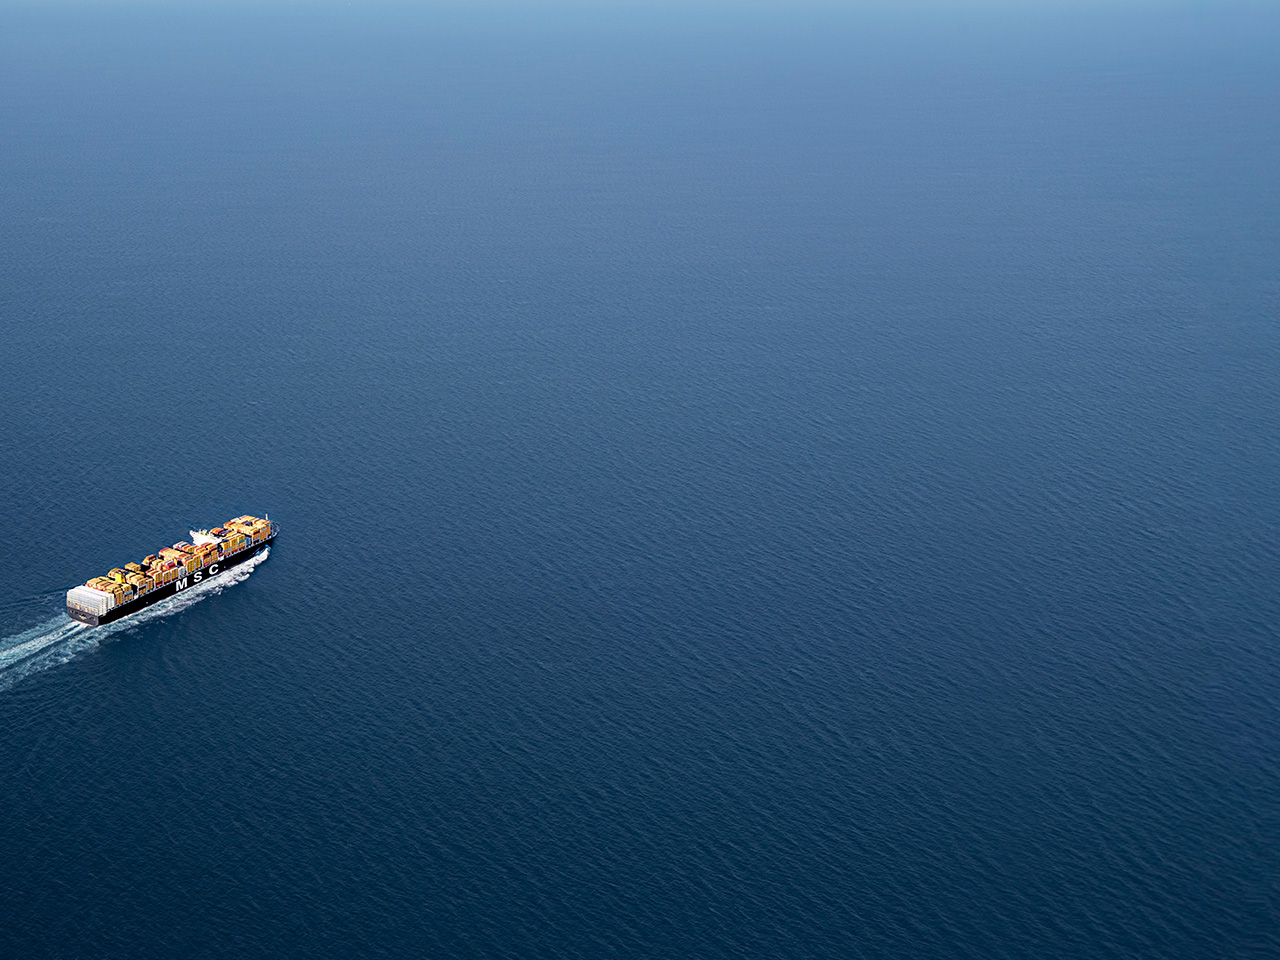 MSC vessel aerial image sailing on deep blue sea